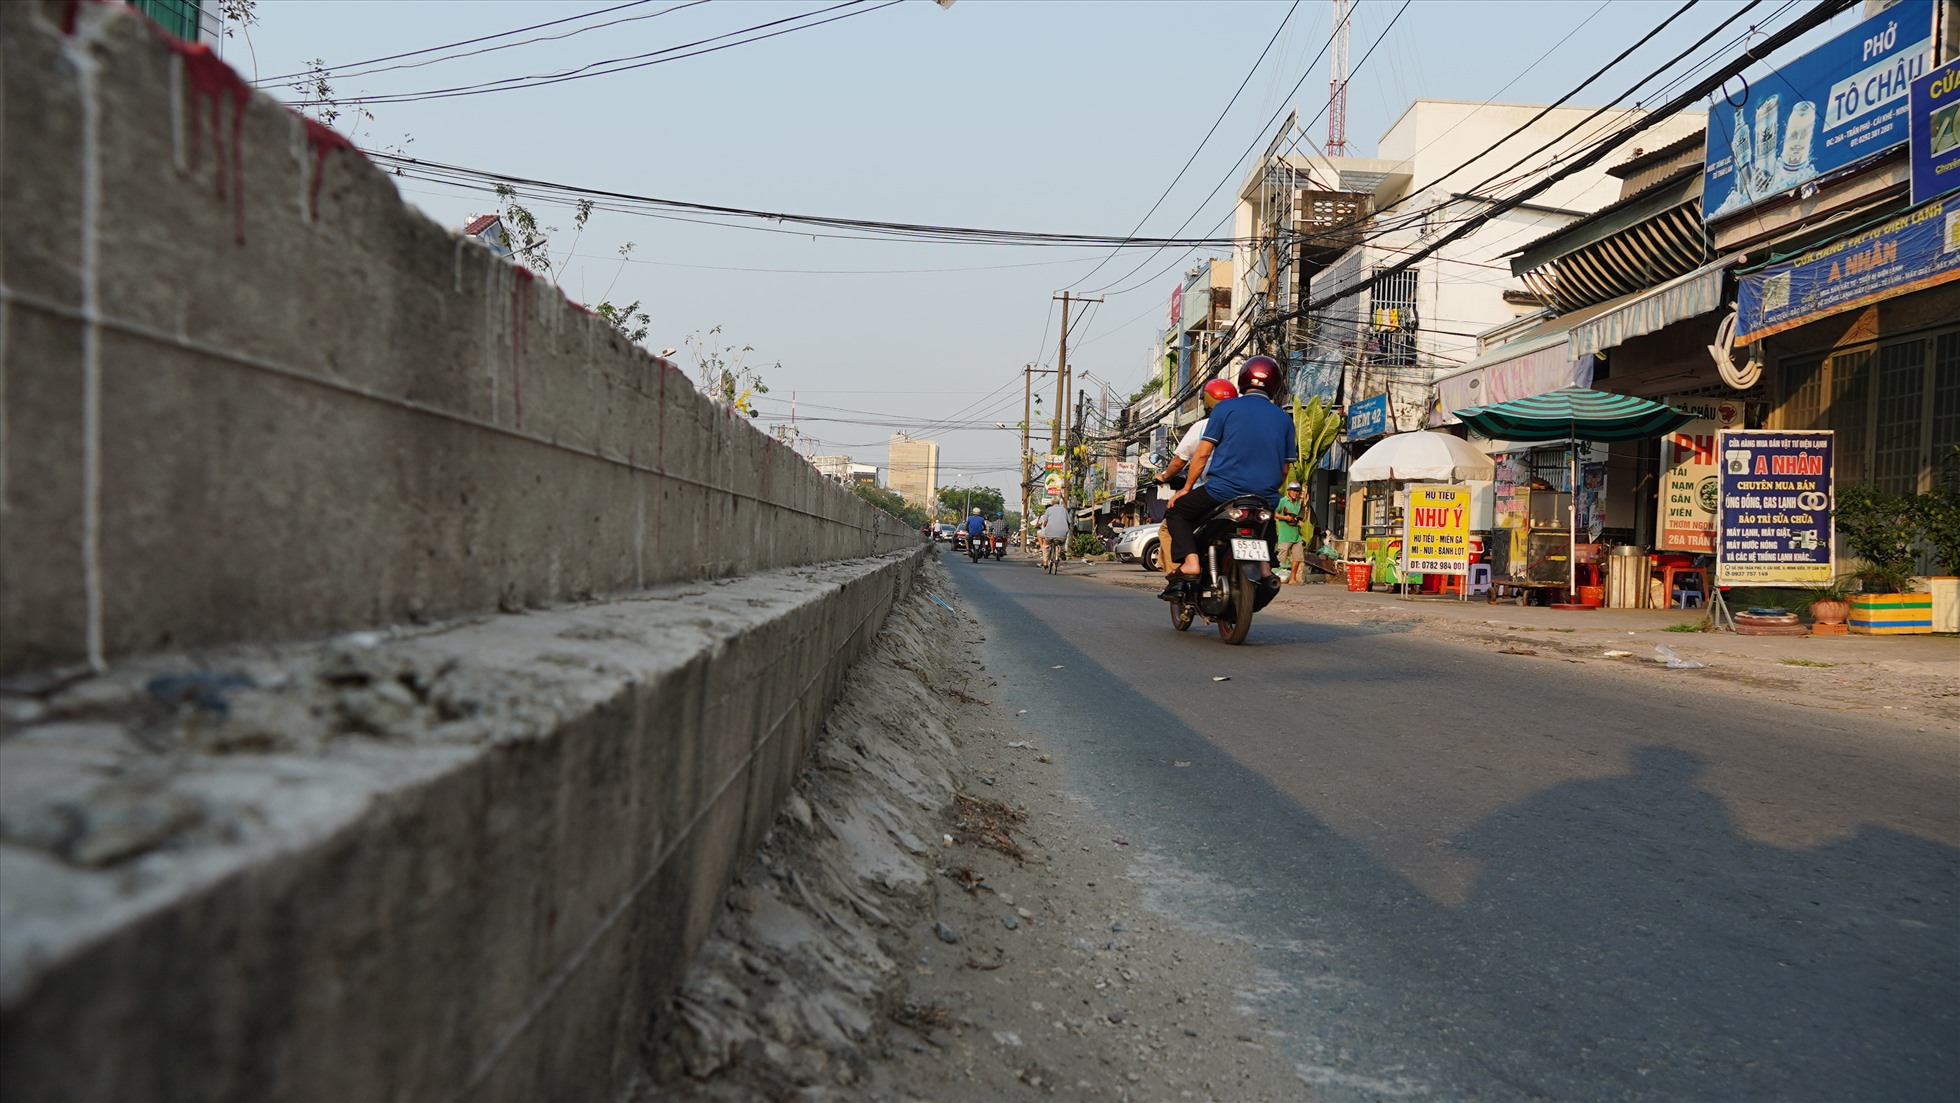 Dự án nâng cấp, mở rộng đường Trần Phú giai đoạn 1 (thuộc phường Cái Khế) là công trình giao thông cấp III do UBND  quận Ninh Kiều làm chủ đầu tư. Dự án có chiều dài trên 1,1km, với tổng mức đầu tư hơn 122,4 tỷ đồng, khởi công ngày 6.10.2021, dự kiến hoàn thành trong tháng 10.2022.